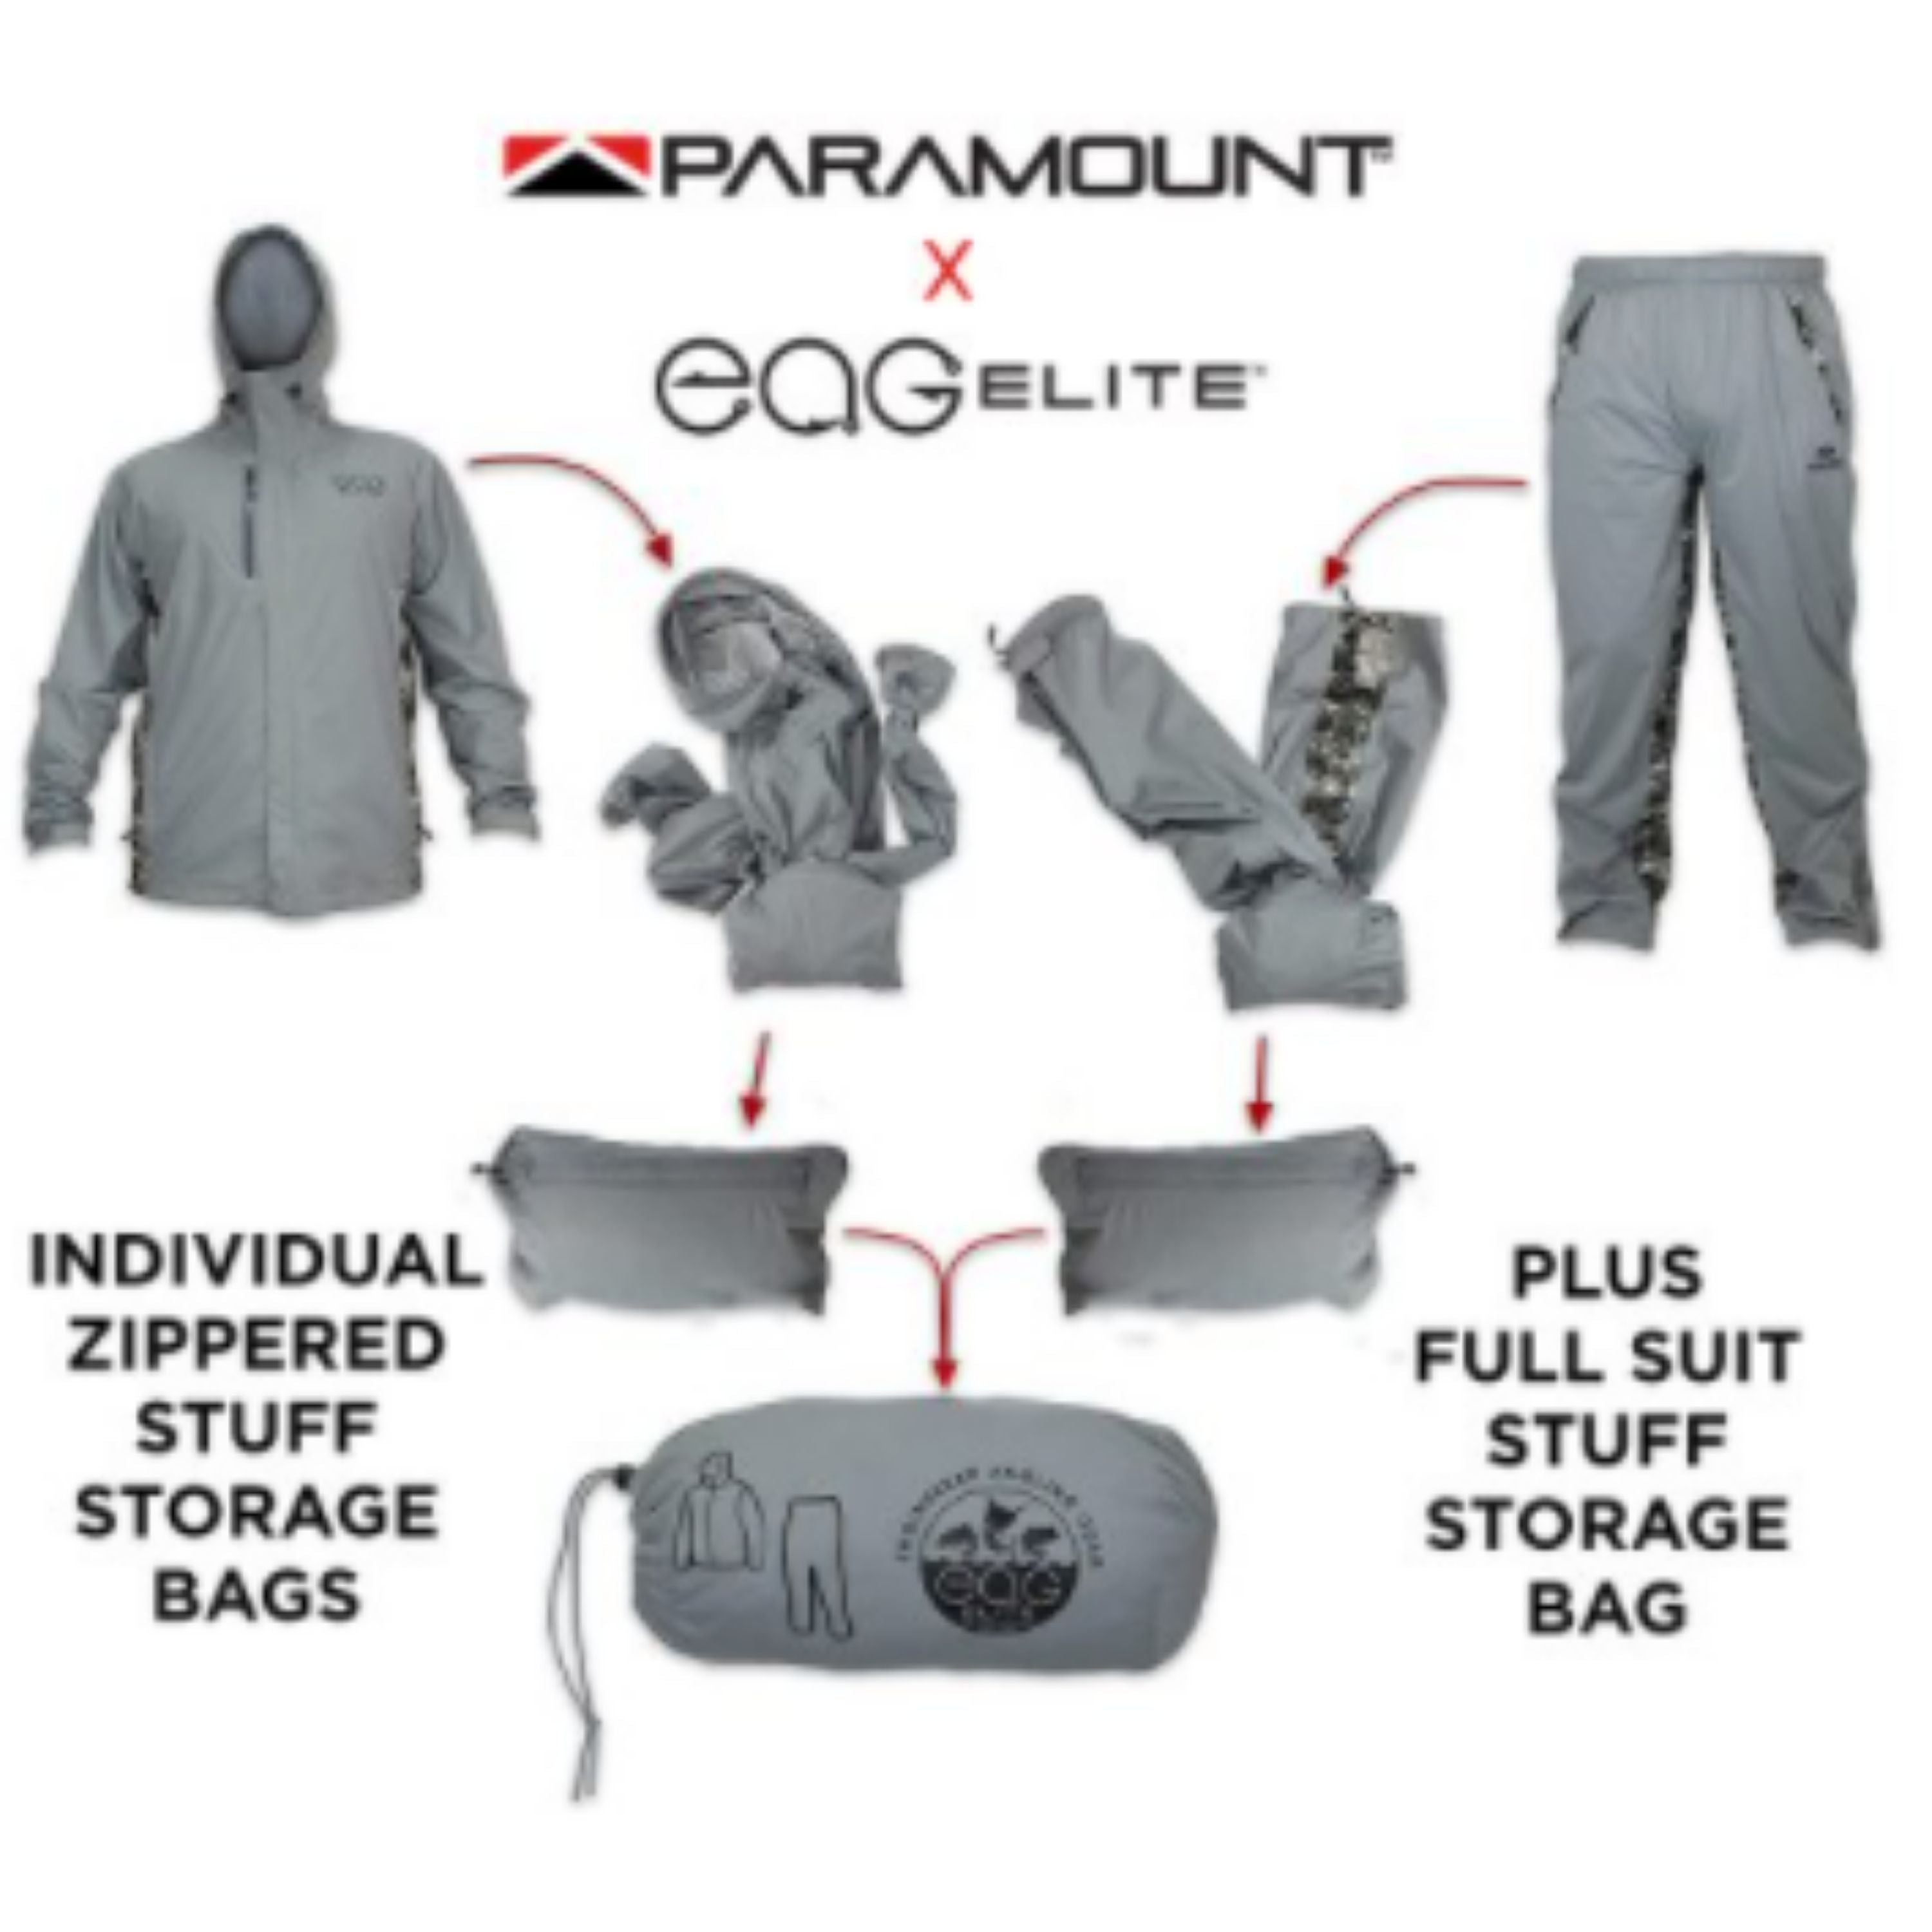 Waterproof breathable packable rain suit